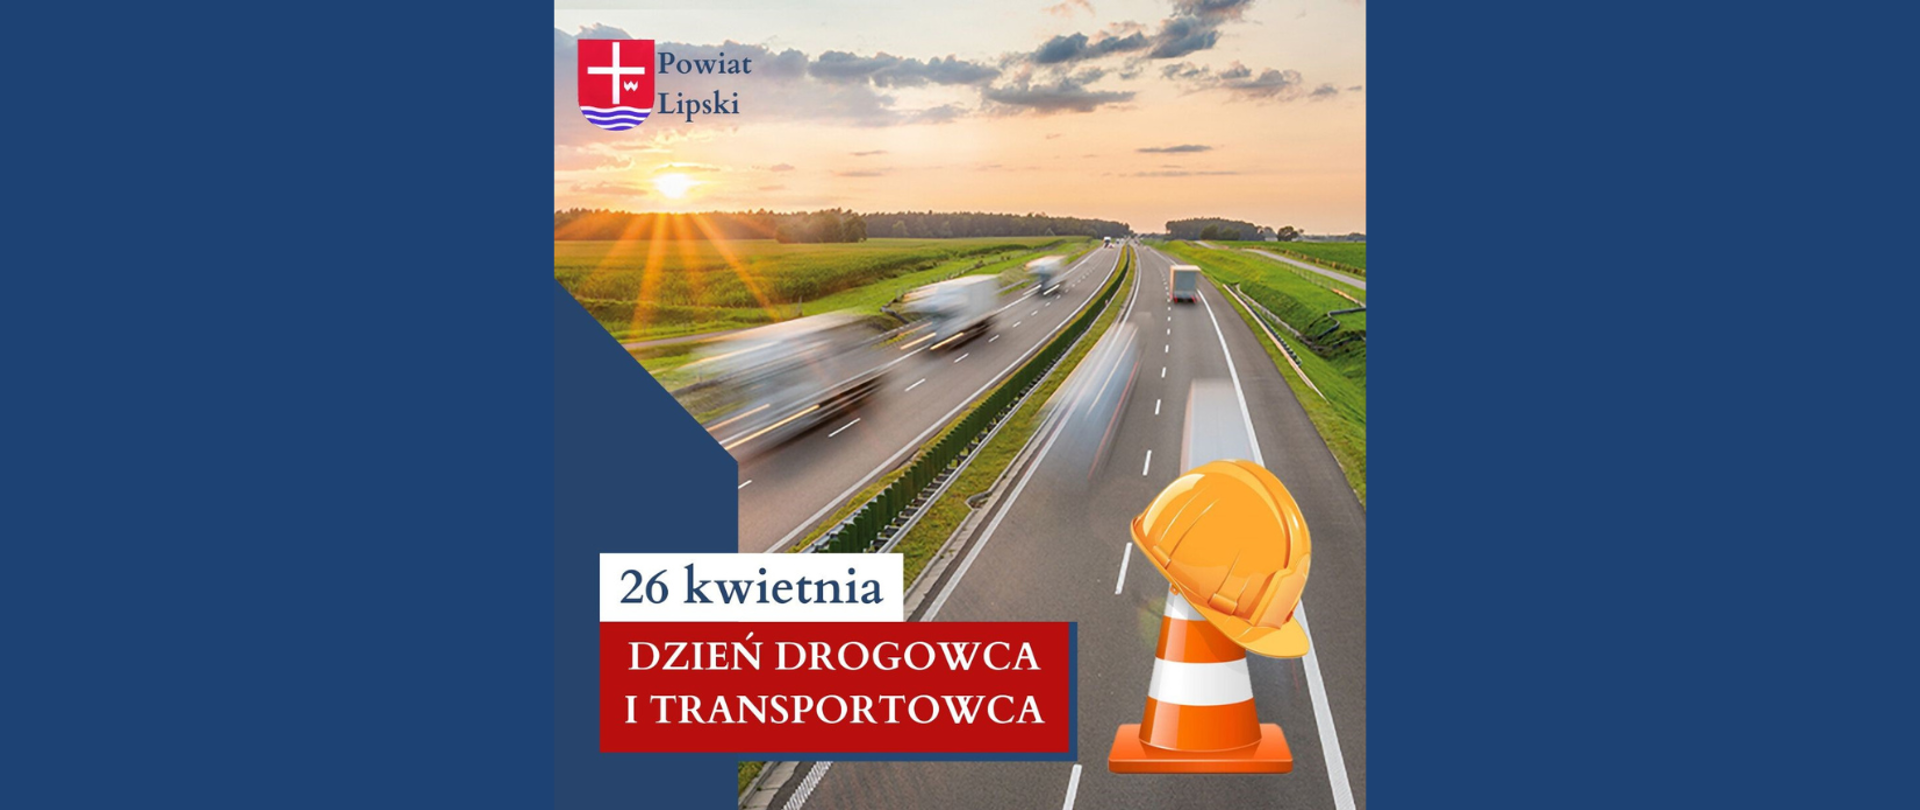 Grafika przedstawiająca drogę ekspresową z herbem powiatu i napisami: Powiat Lipski - 26 kwietnia - Dzień Drogowca i Transportowca.